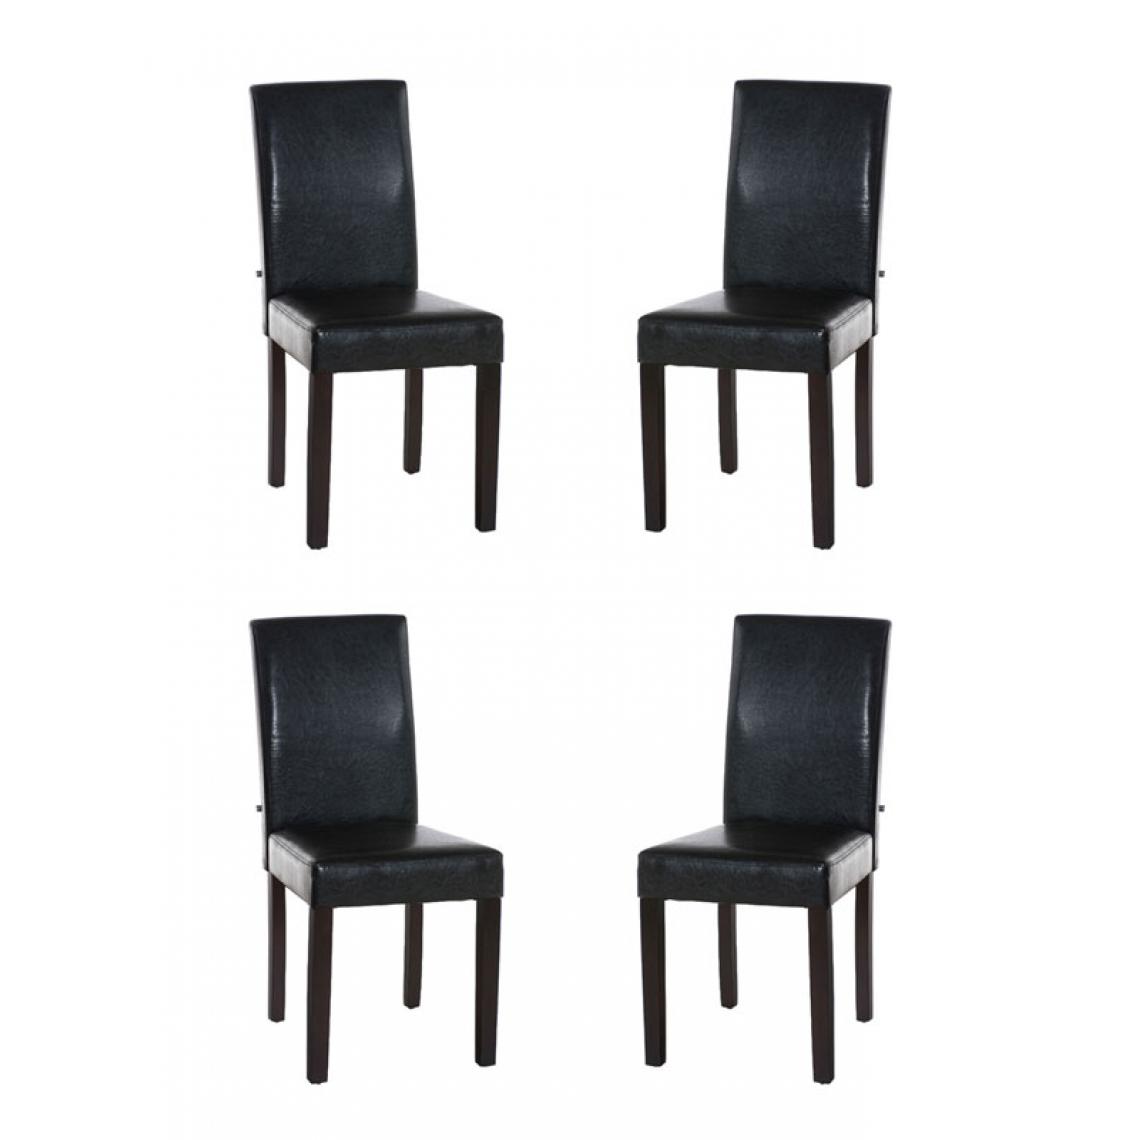 Icaverne - Contemporain Lot de 4 chaises de salle à manger famille Rabat marron foncé couleur marron - Chaises